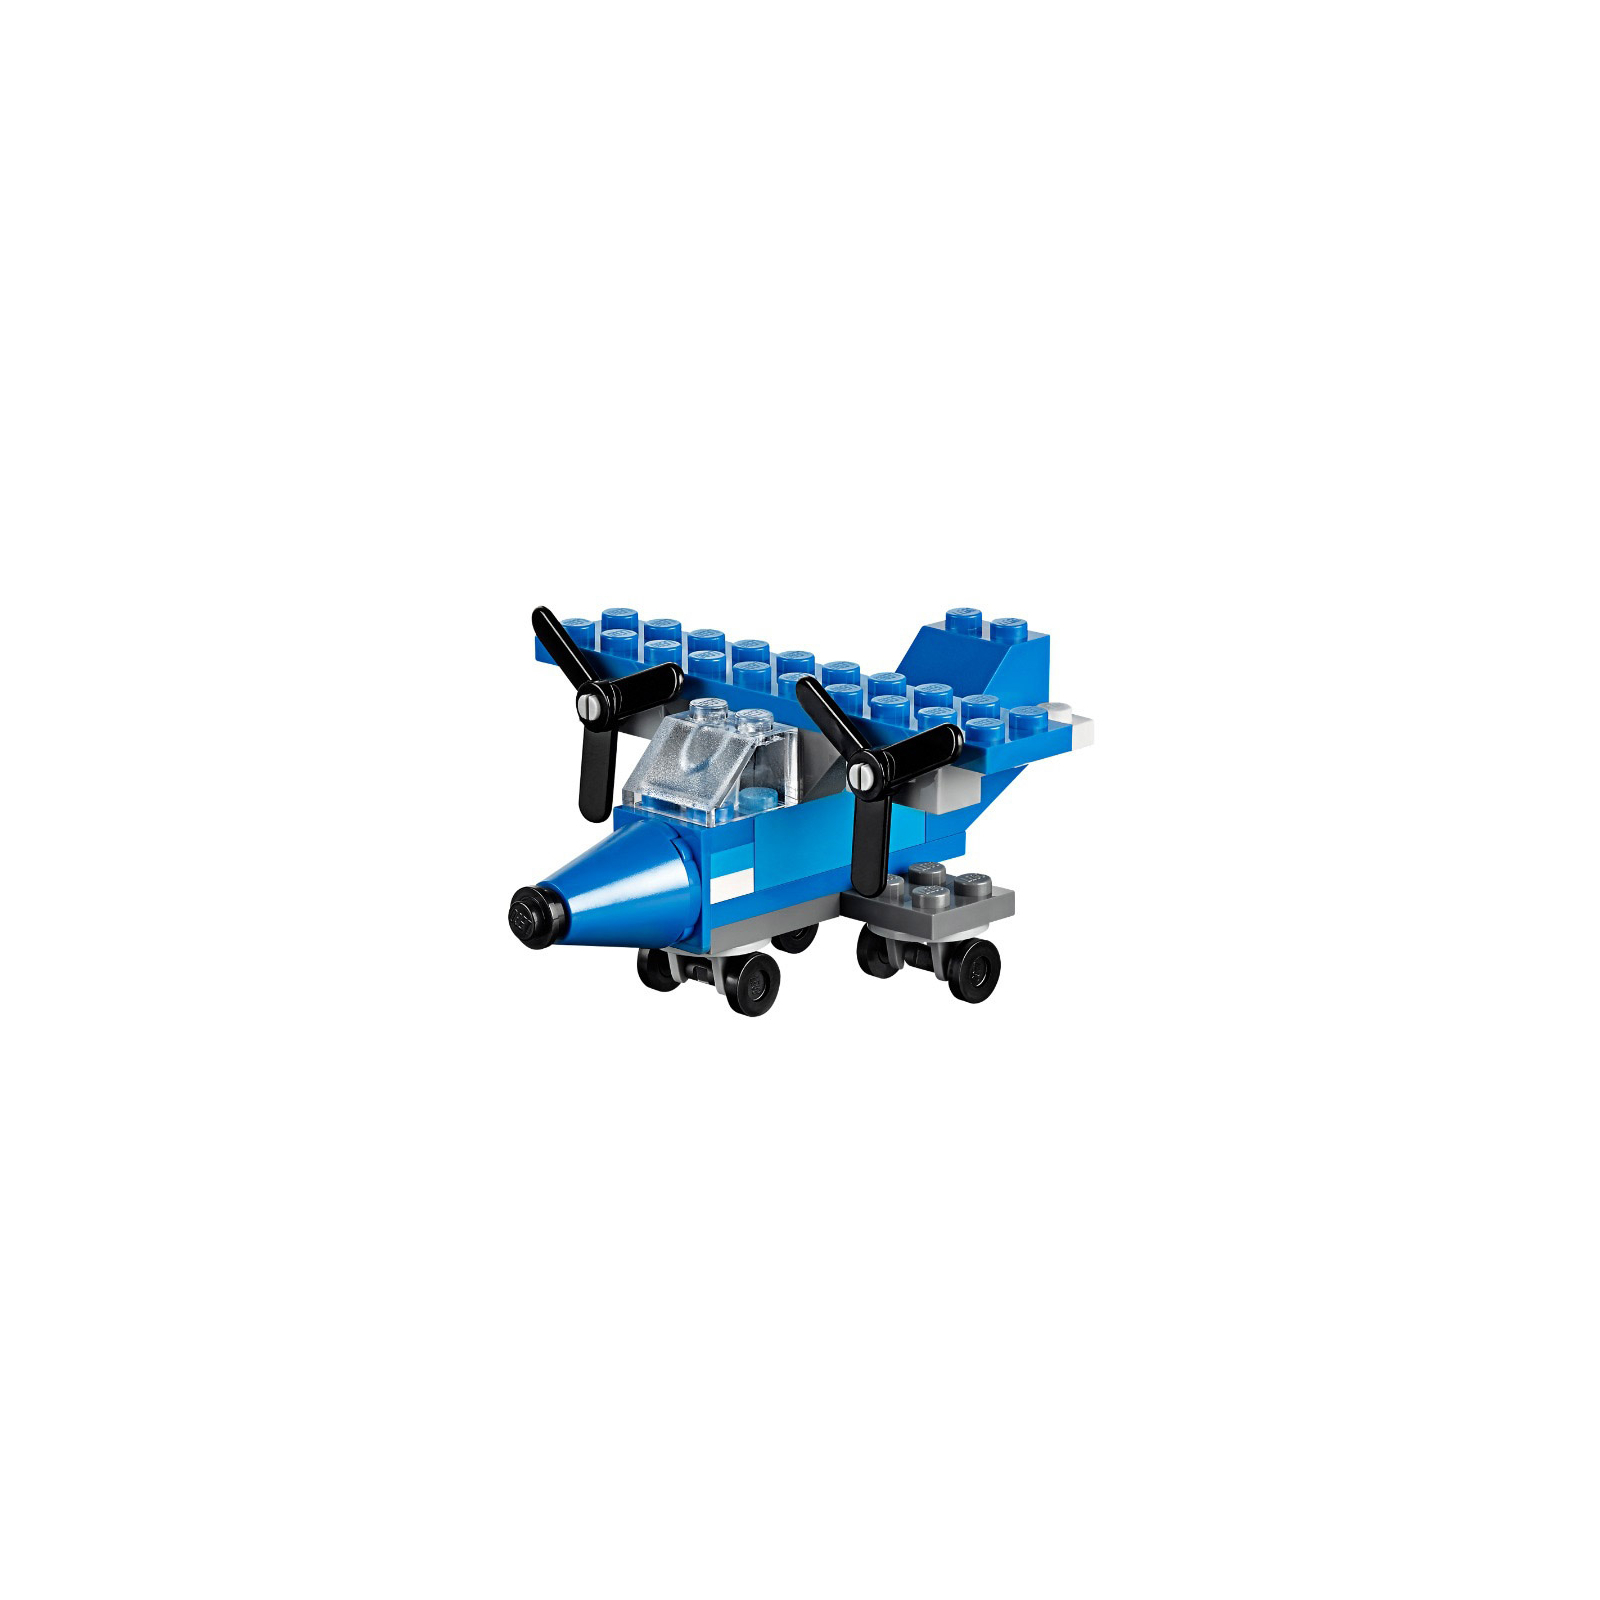 Конструктор LEGO Classic Кубики для творческого конструирования (10692) изображение 7